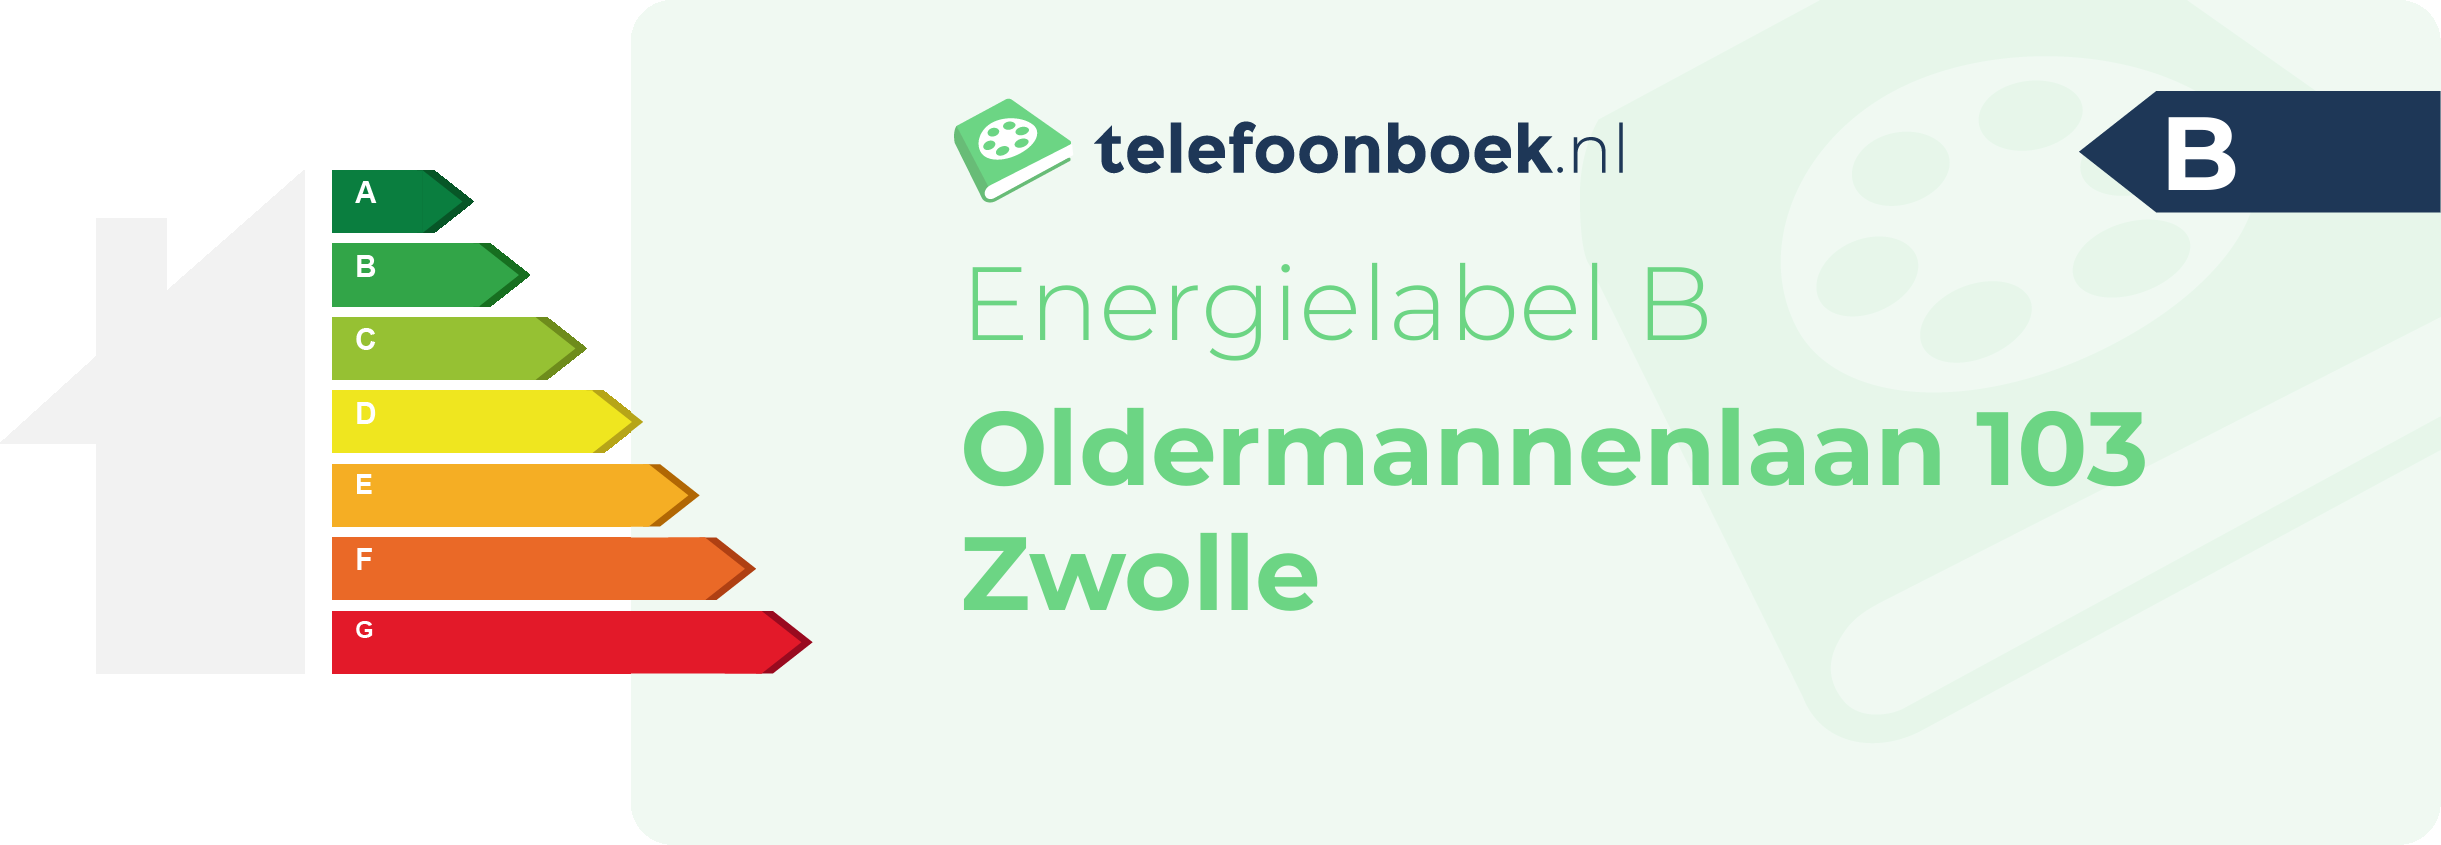 Energielabel Oldermannenlaan 103 Zwolle